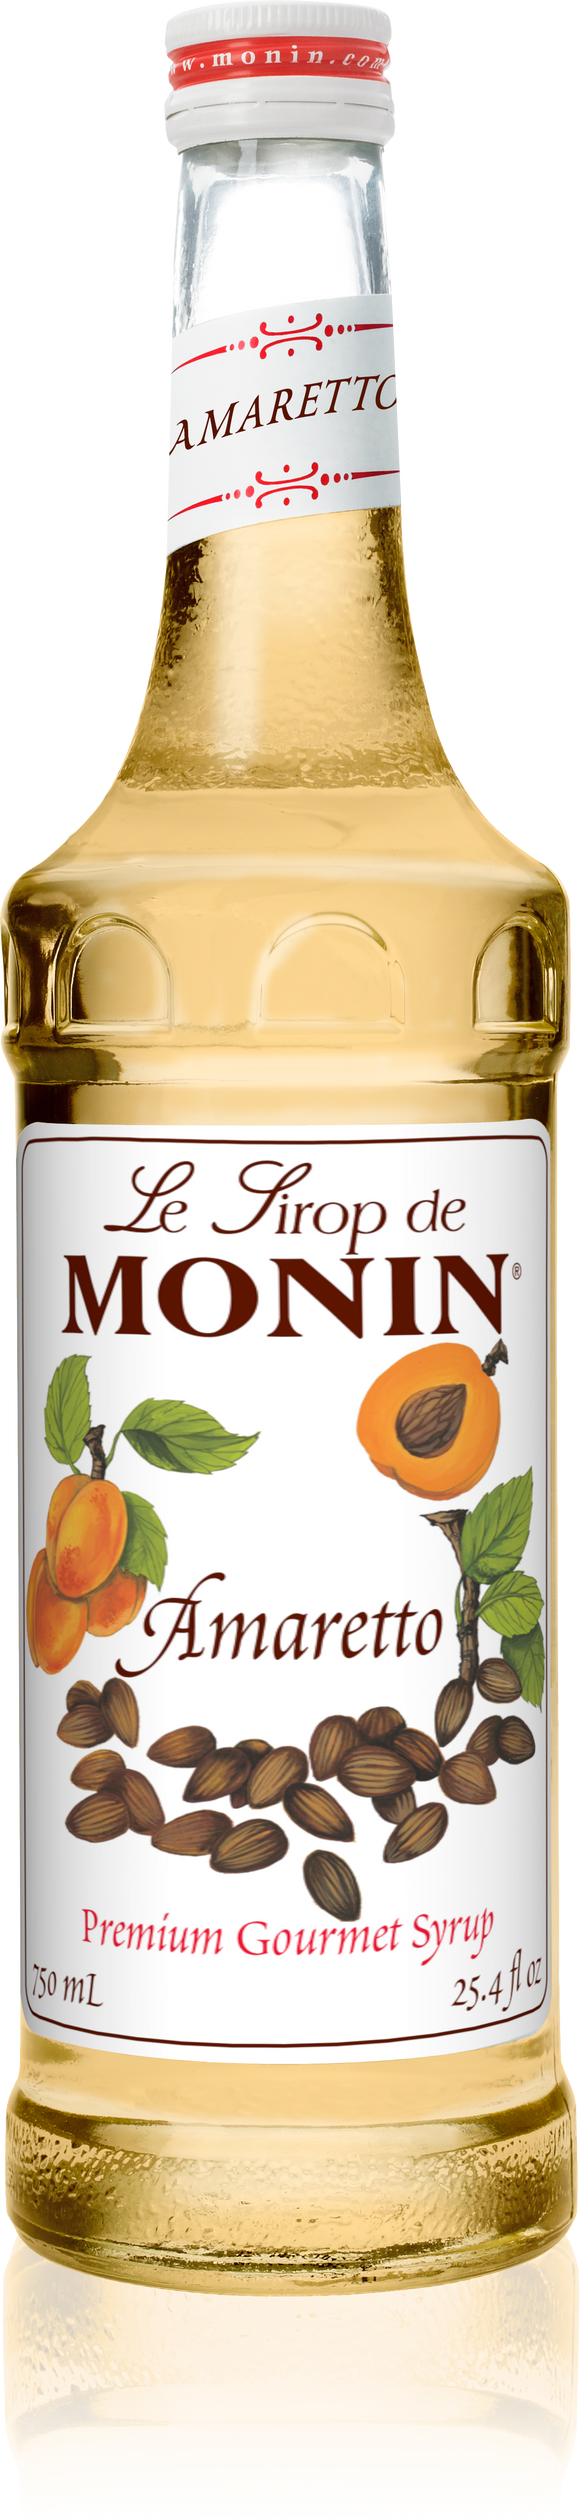 MONIN Gourmet Flavorings Amaretto (Albaricoque y Almendras) 750 ml